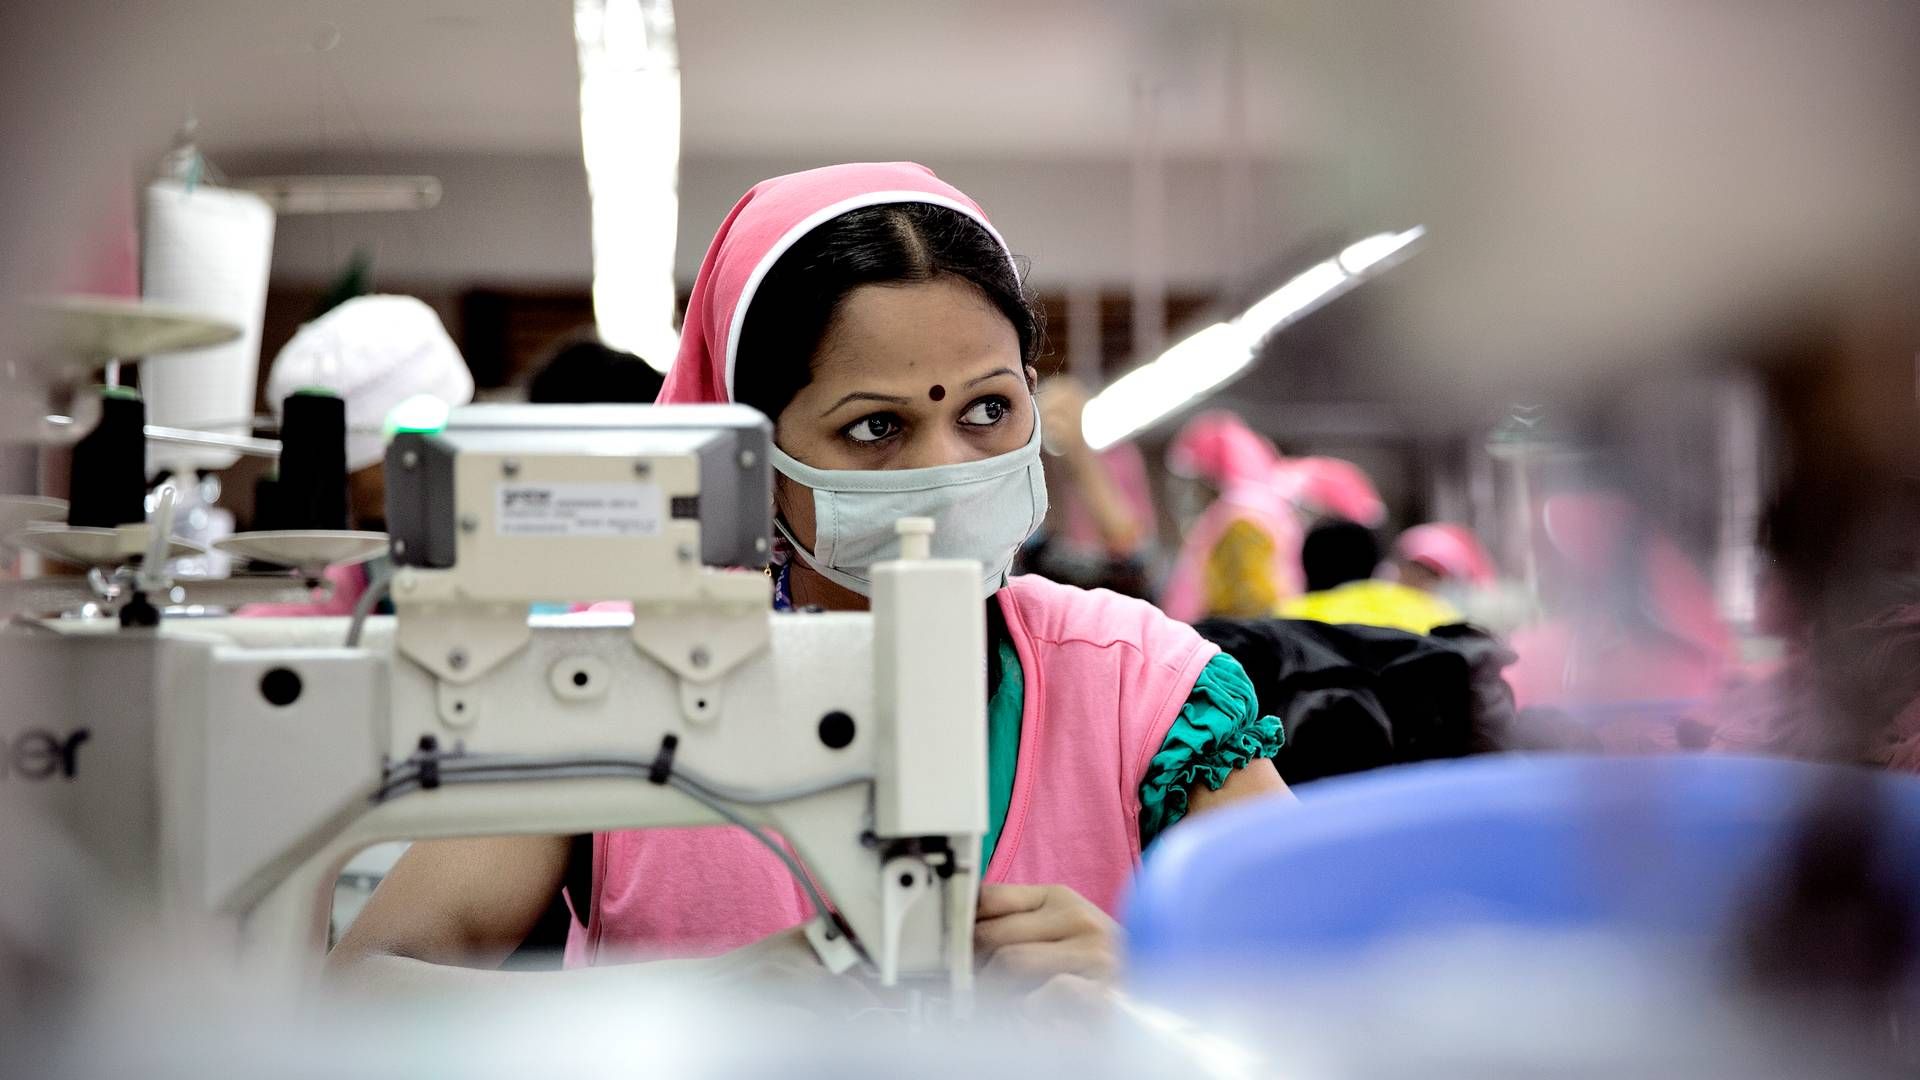 Coronapandemien og aflyste ordrer fra store detailvirksomheder satte arbejderne i Bangladesh' tøjindustri under stort pres, viser ny rapport. Arkivfoto. | Foto: Joachim Adrian